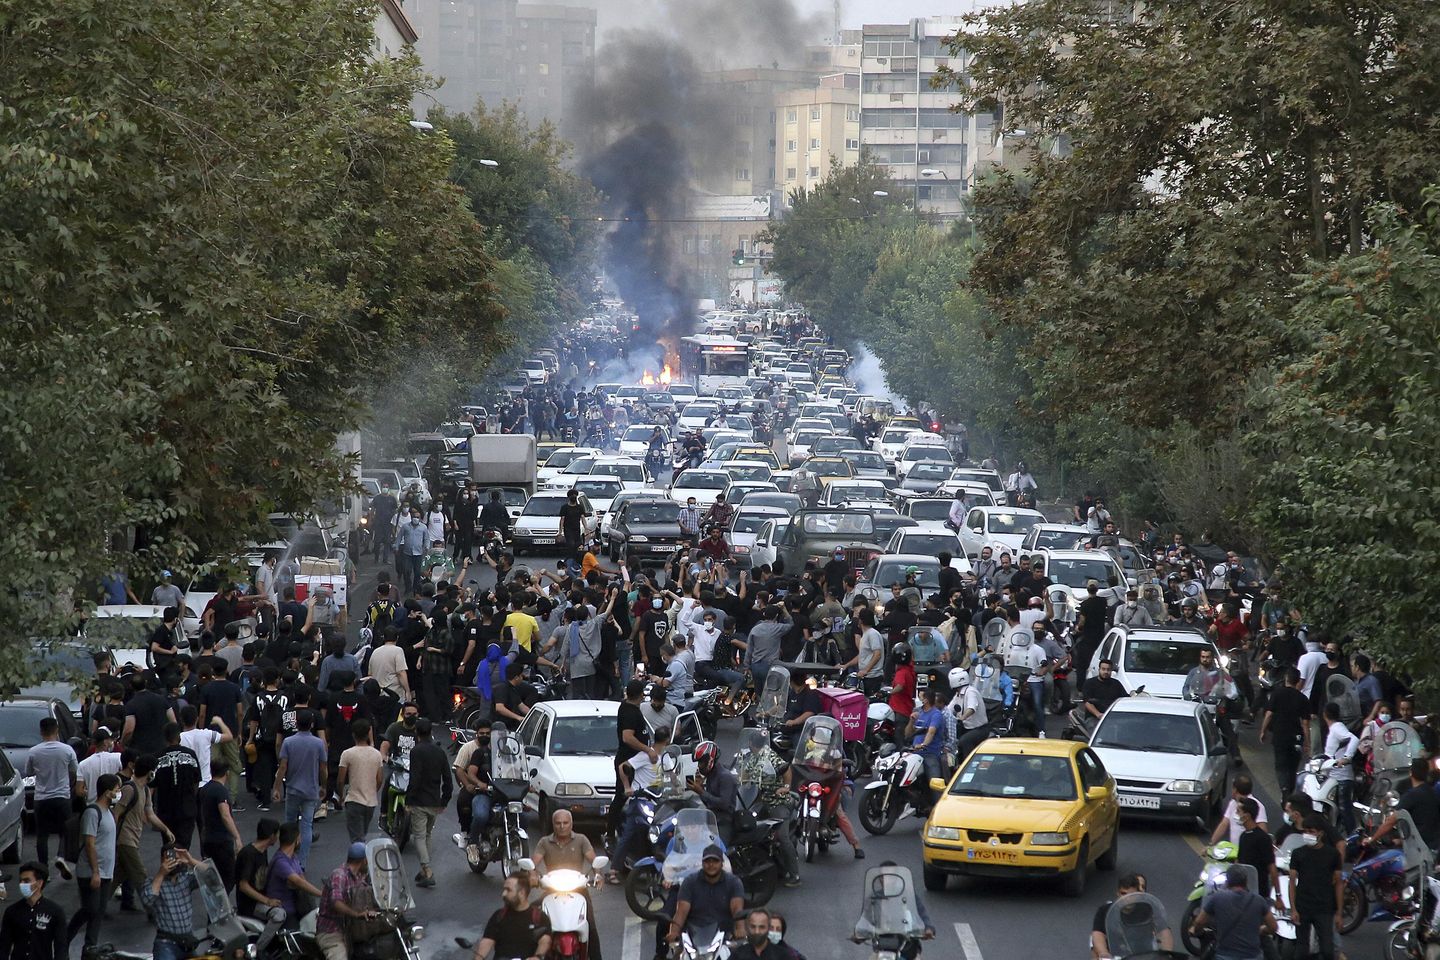 Muhalif grup, yaygın protestoların İran rejimi için 'statüko'nun sonunu işaret ettiğini söylüyor